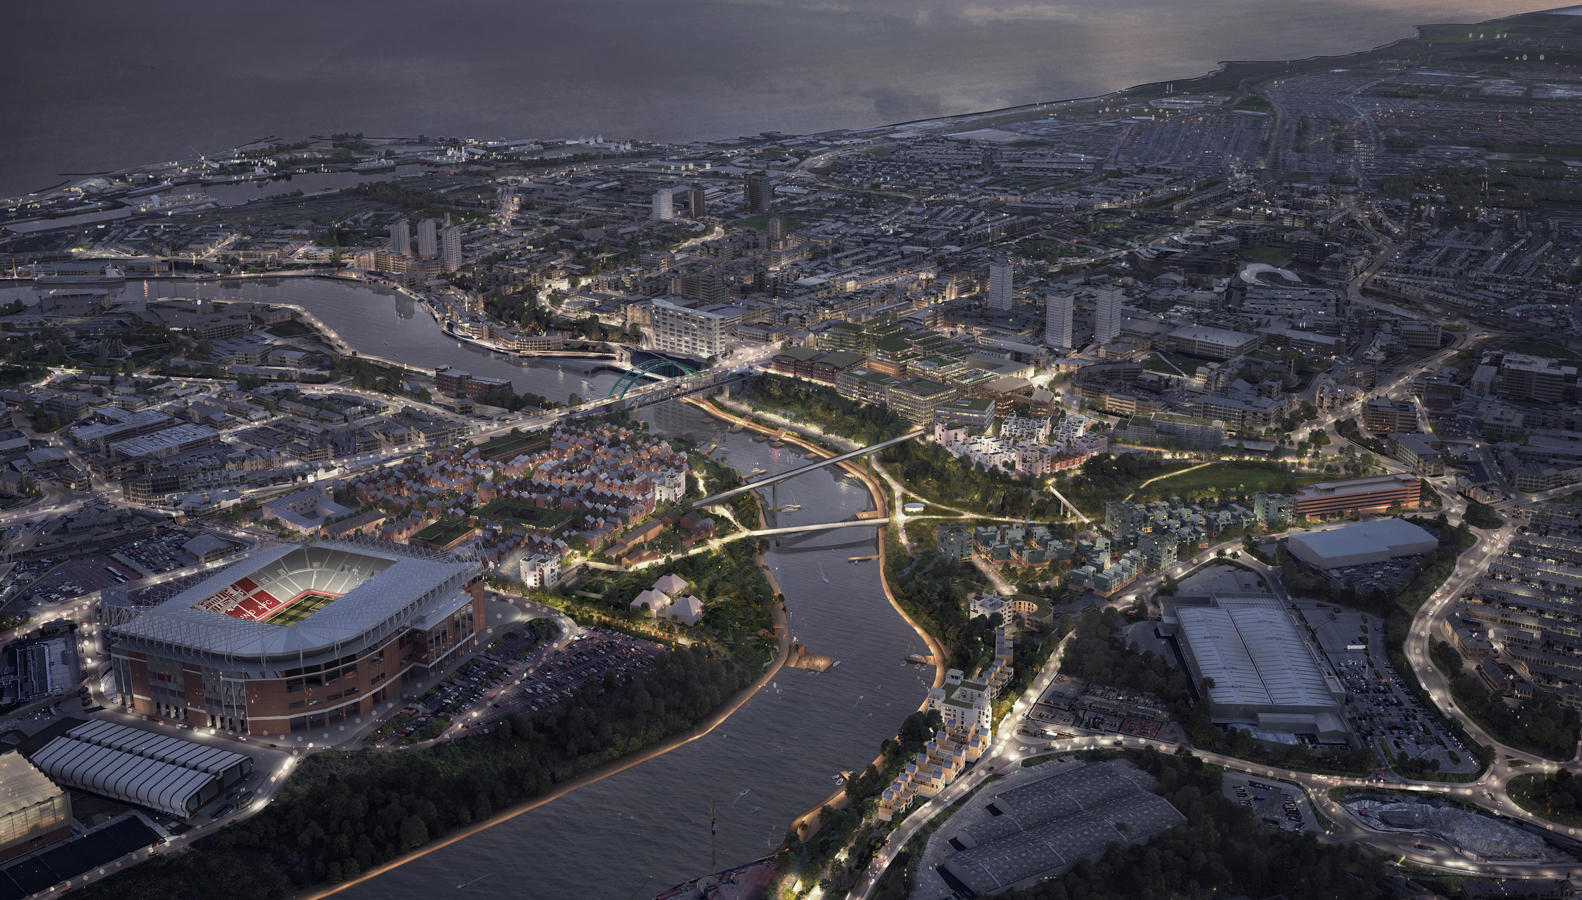 Riverside Sunderland Masterplan revealed